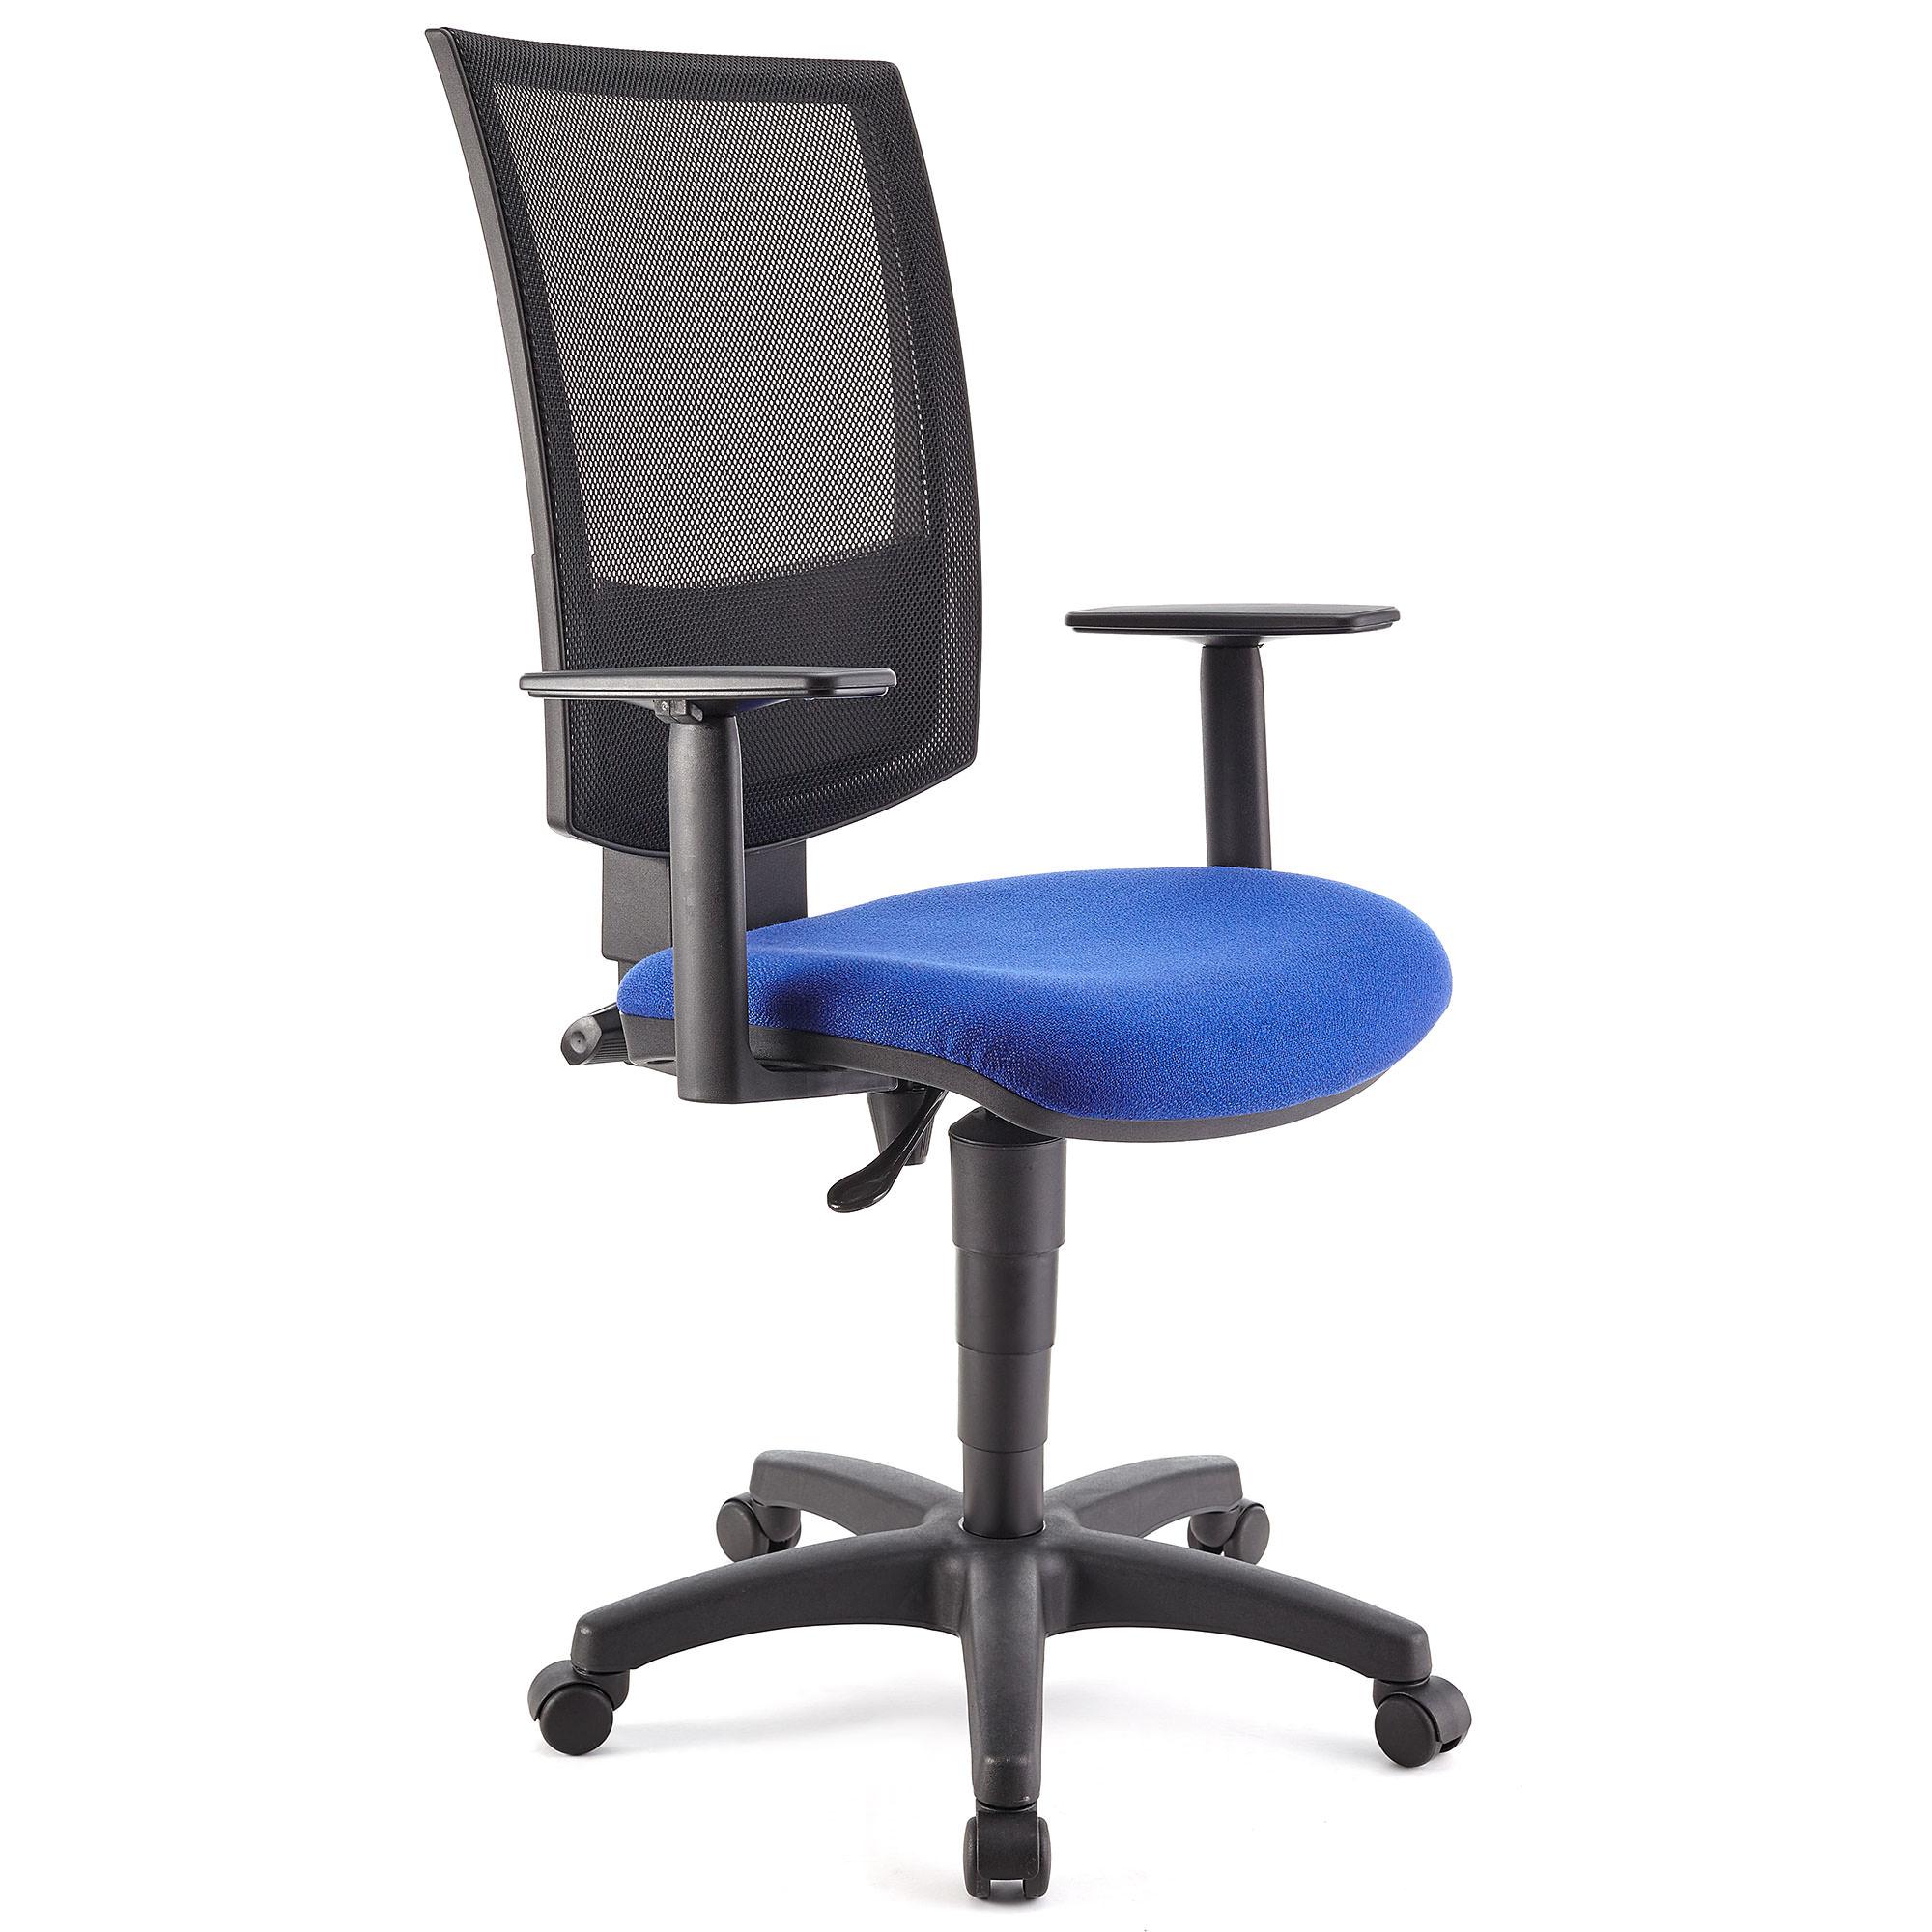 Bürostuhl PANDORA PLUS mit verstellbaren Armlehnen, Rückenlehne mit Netzbezug, dicke Polsterung, Farbe Blau